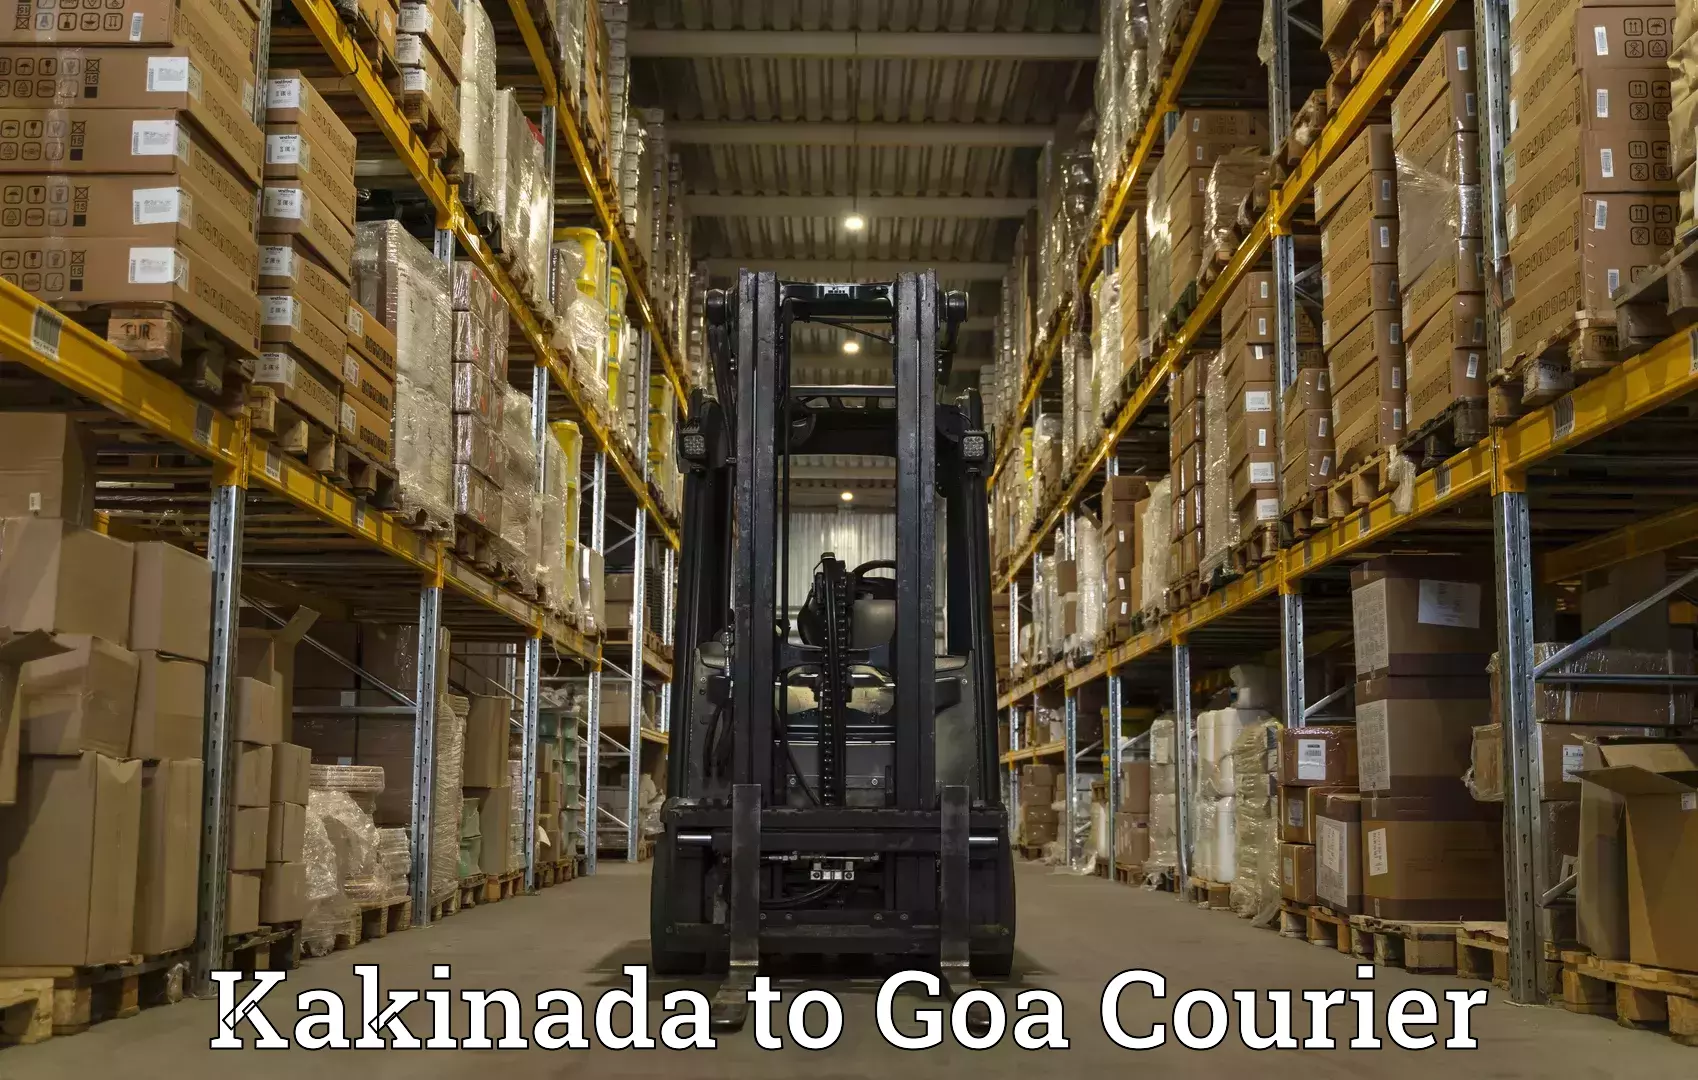 Cargo delivery service Kakinada to Vasco da Gama